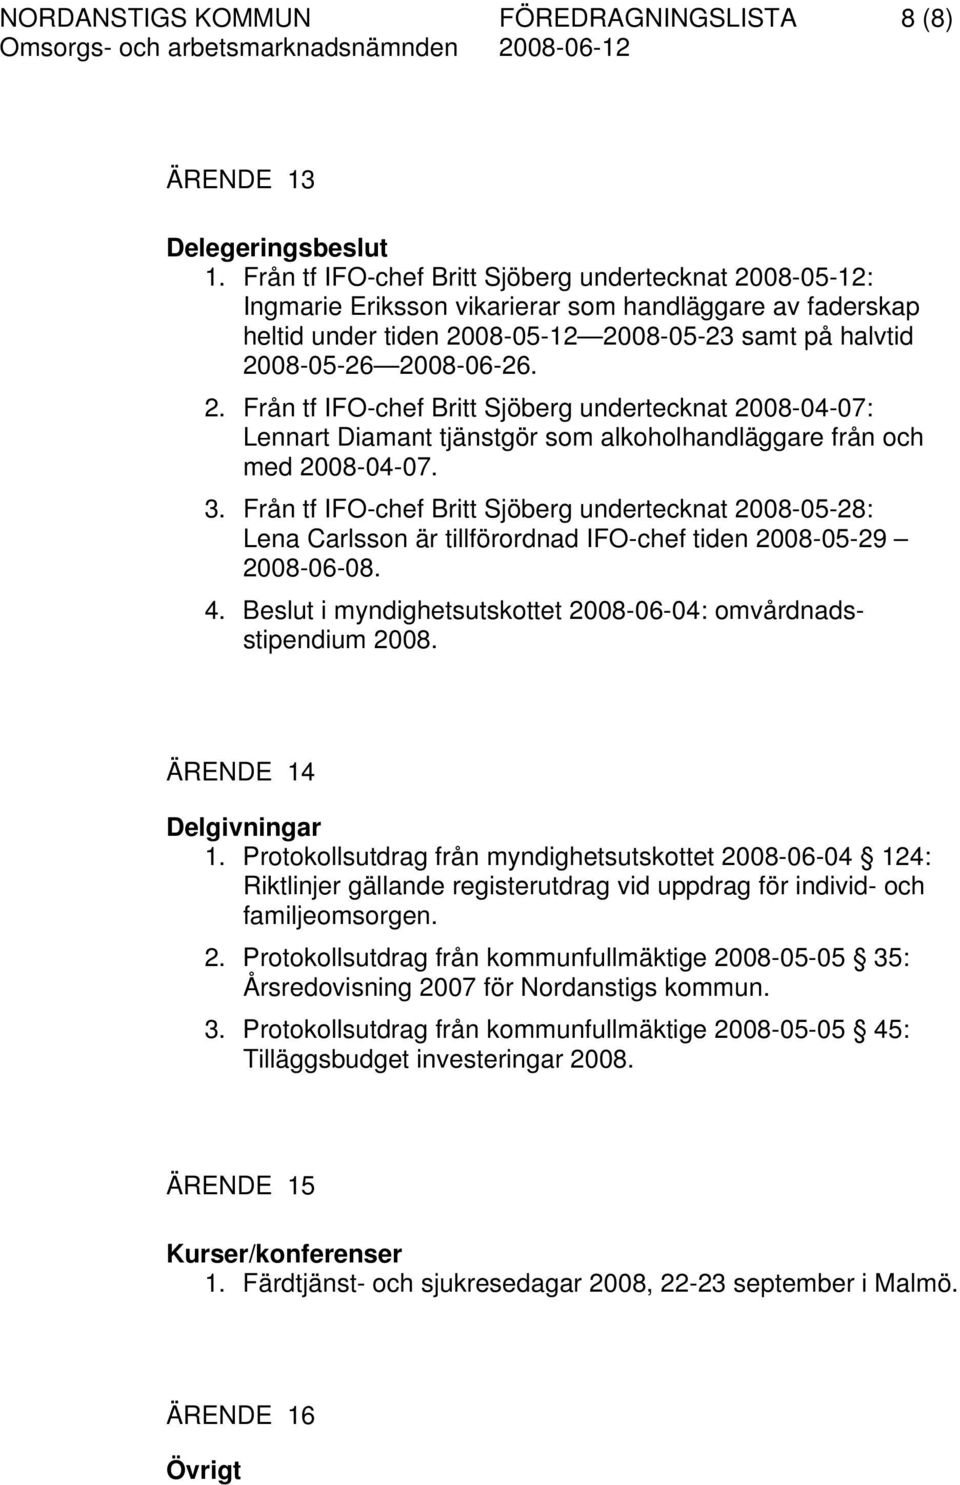 3. Från tf IFO-chef Britt Sjöberg undertecknat 2008-05-28: arlsson är tillförordnad IFO-chef tiden 2008-05-29 2008-06-08. 4. Beslut i myndighetsutskottet 2008-06-04: omvårdnadsstipendium 2008.